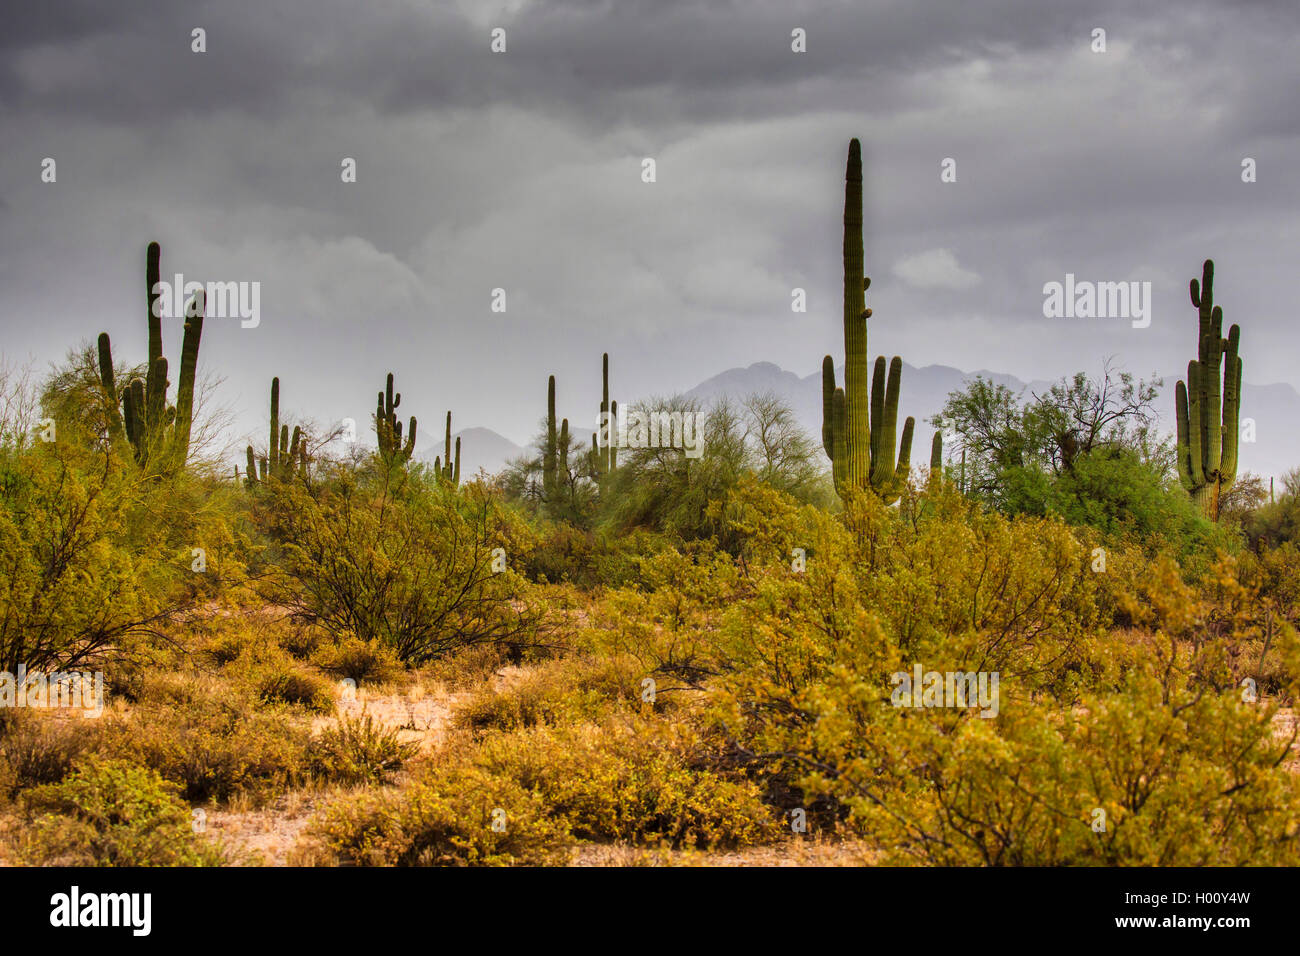 Saguaro-Kaktus, Saguarokaktus, Riesenkaktus, Kandelaberkaktus (Carnegiea gigantea, Cereus giganteus), zahlreiche Pflanzen, nach  Stock Photo